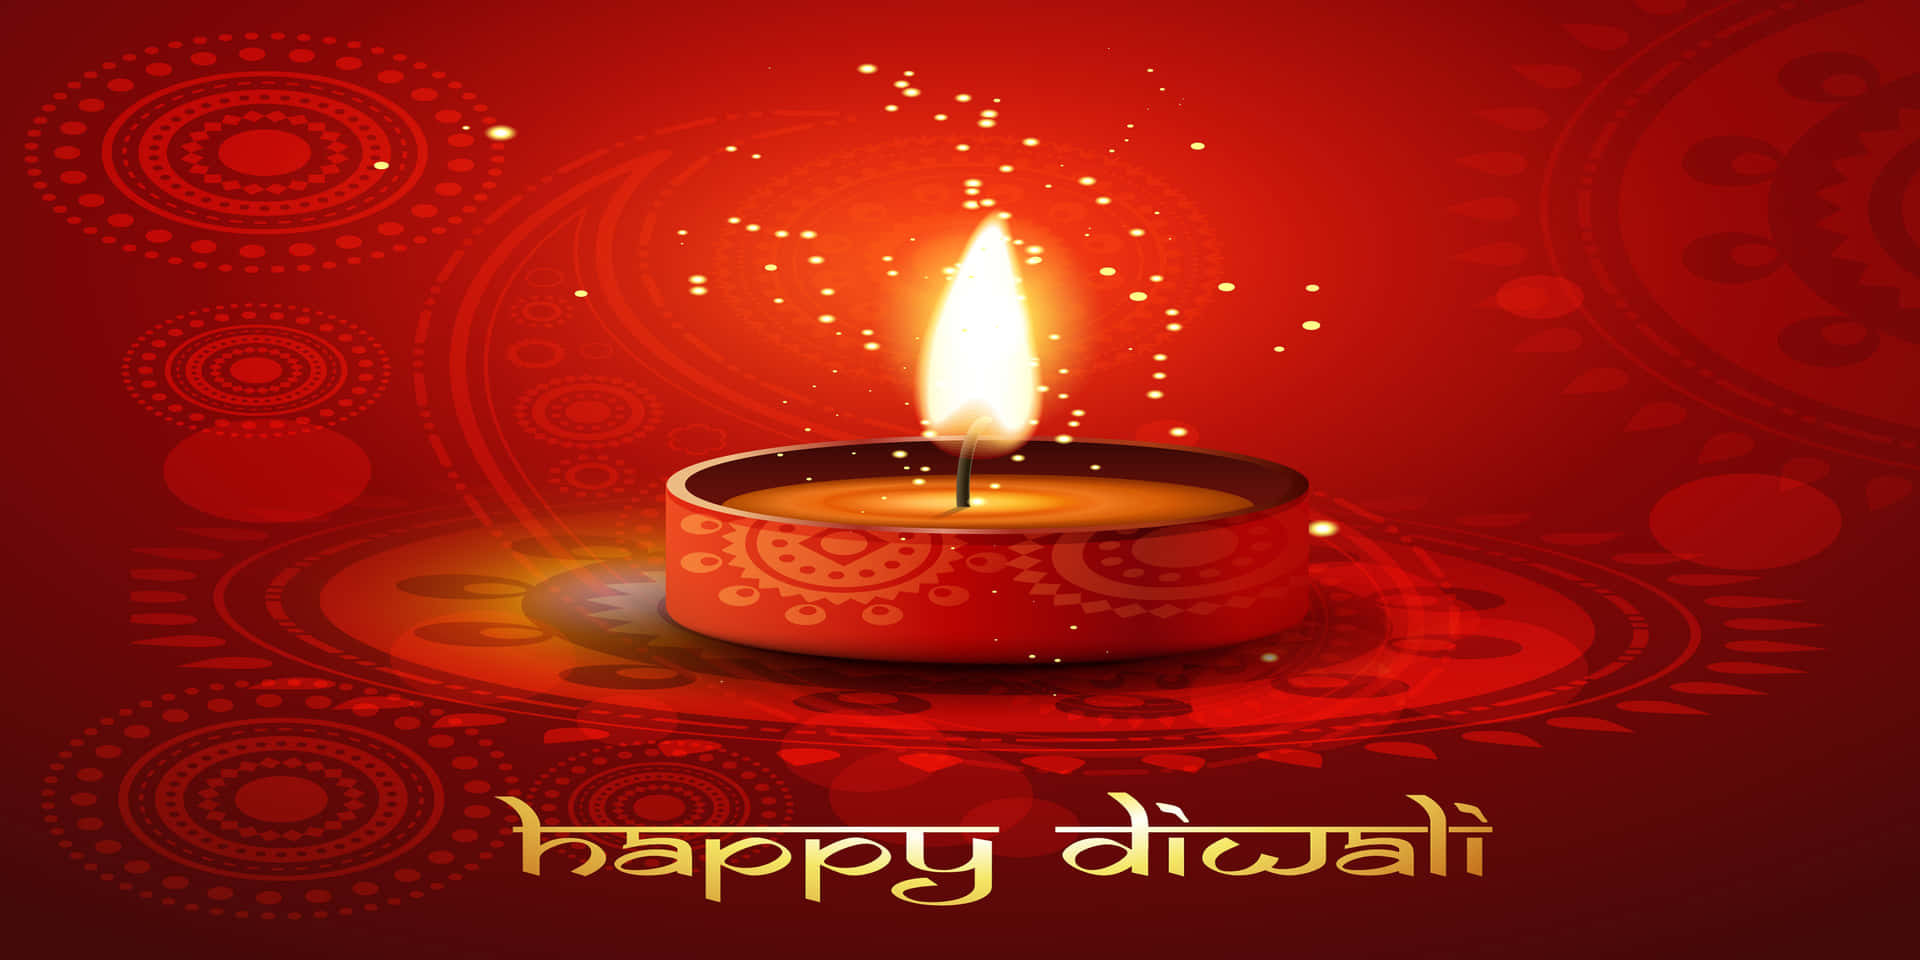 Tarjetade Felicitación De Diwali Con Una Vela